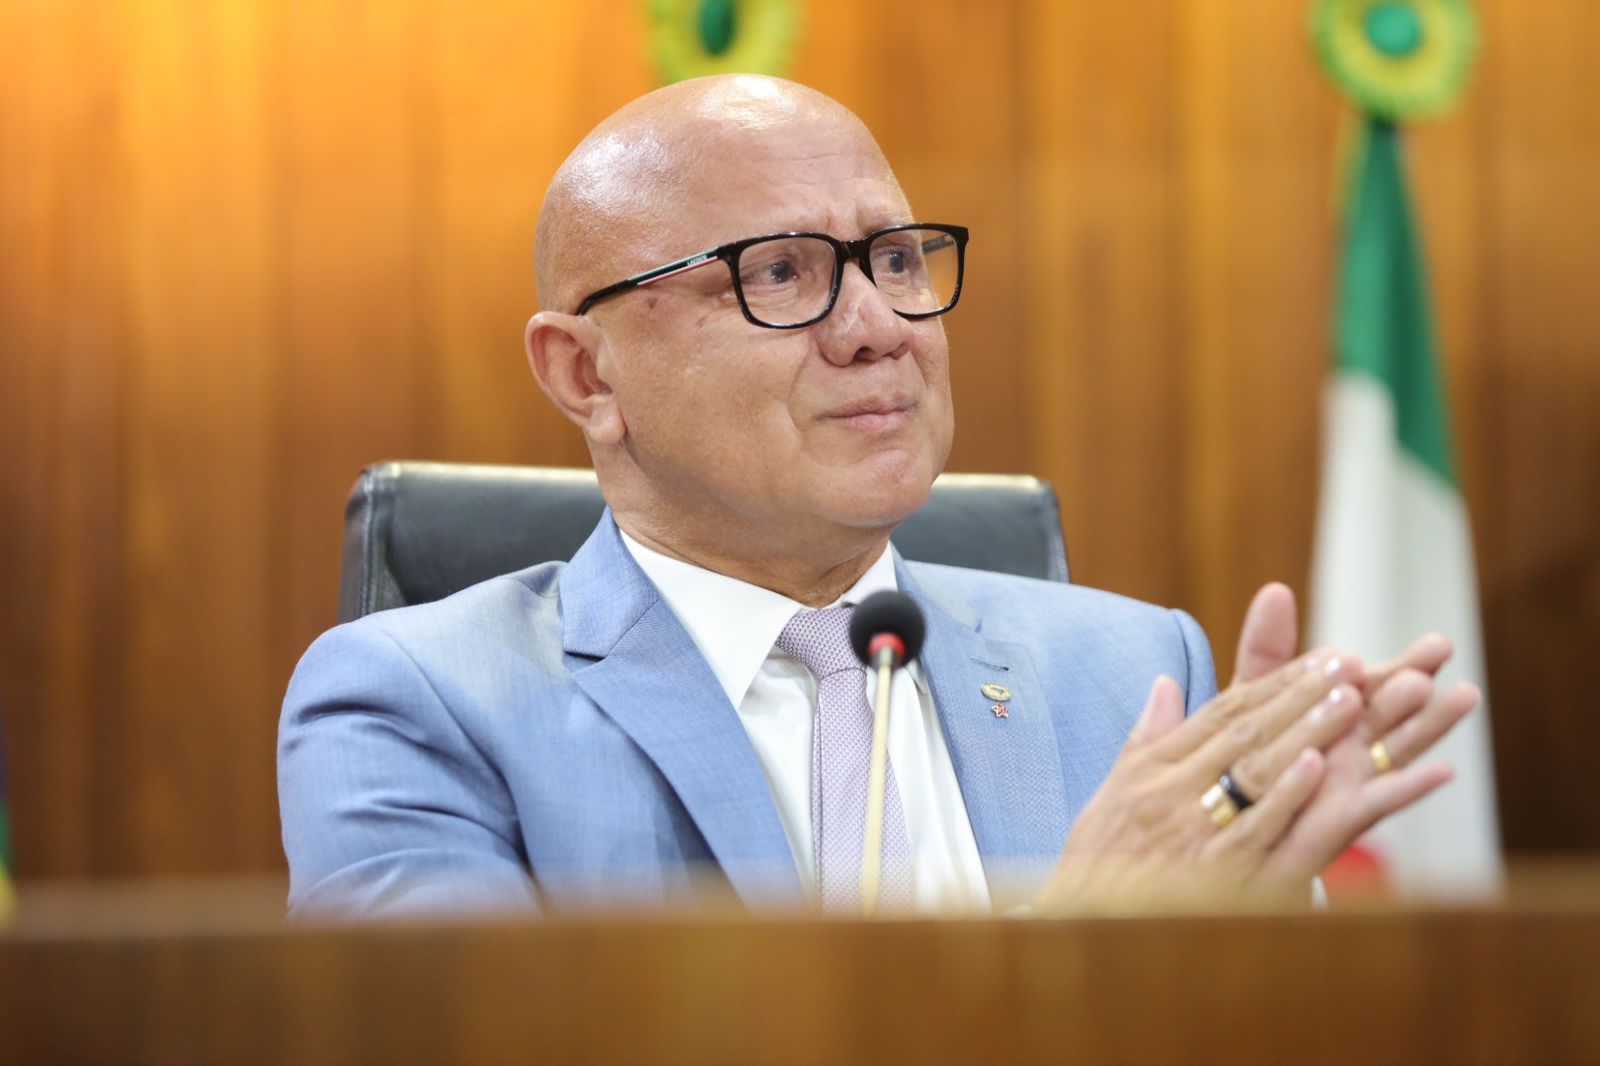 Franzé Silva é eleito presidente da Assembleia Legislativa do Piauí